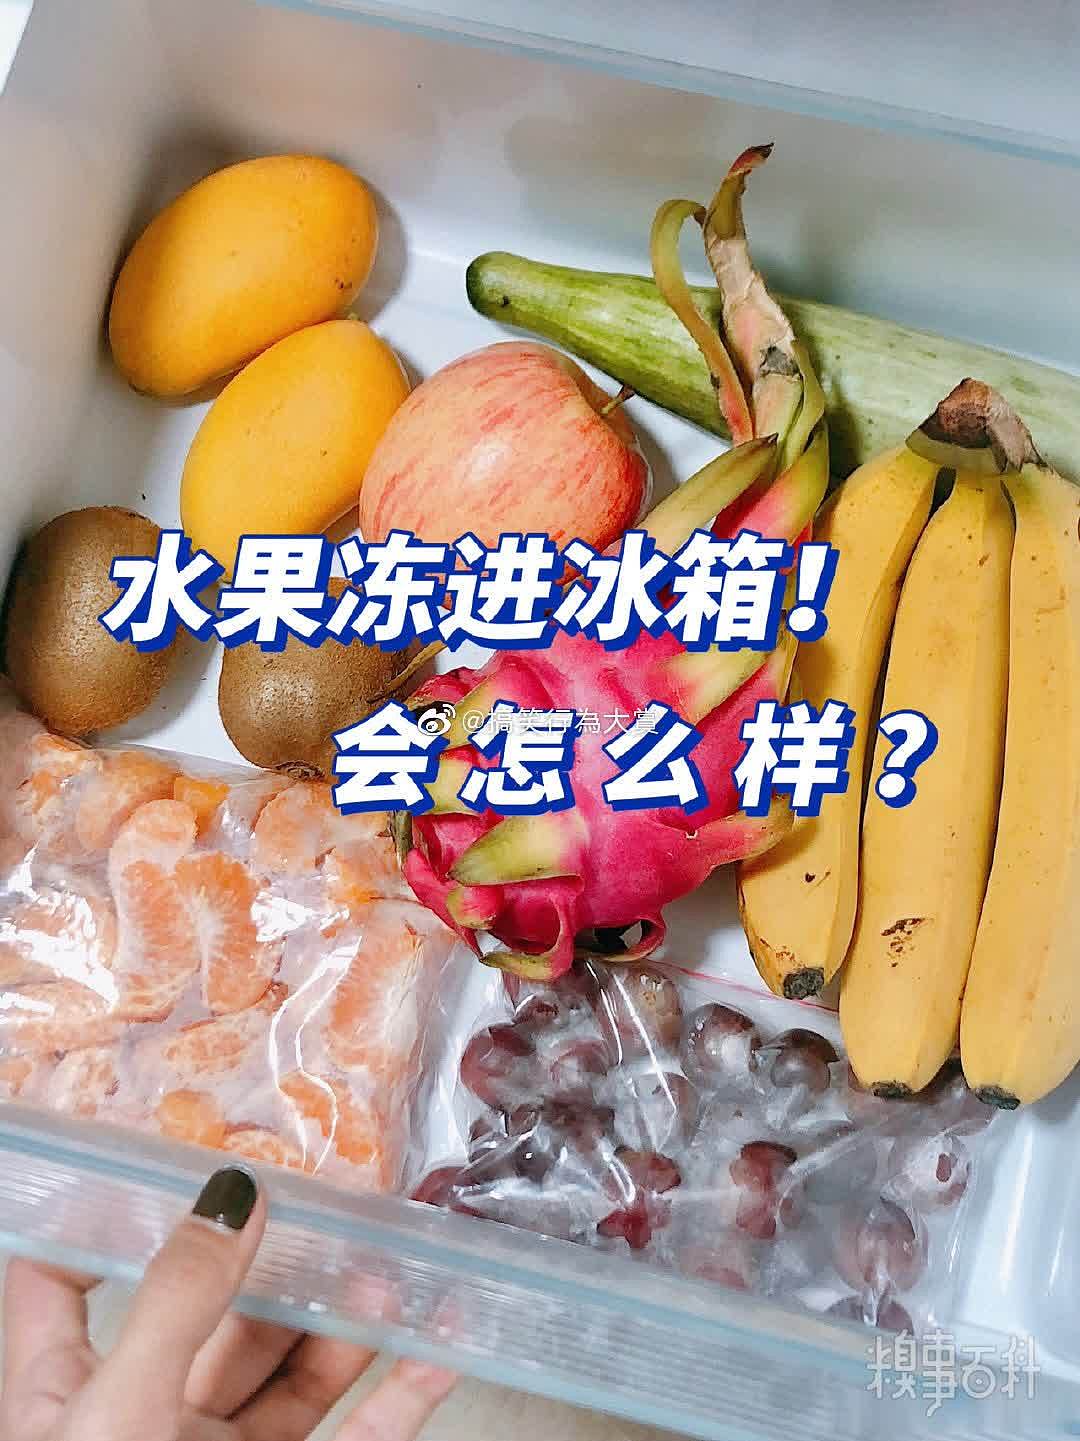 把水果放进冰箱会怎么